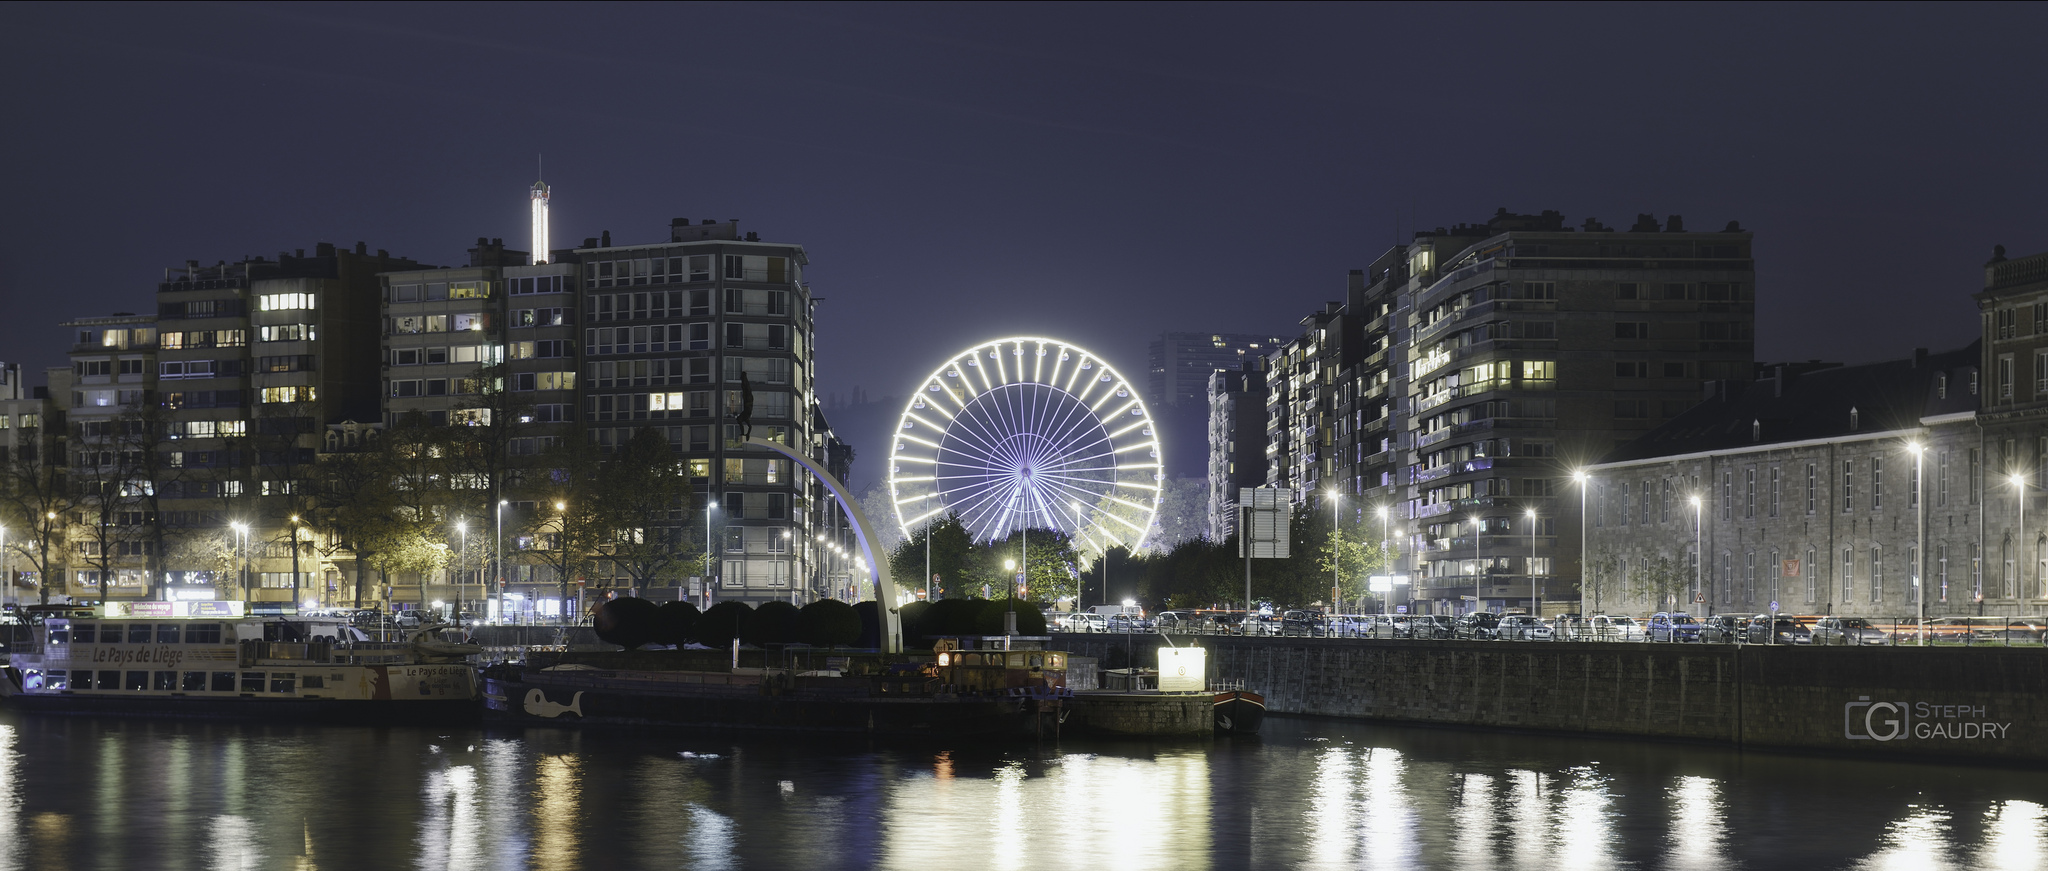 La grande roue de la foire à Liège [Click to start slideshow]